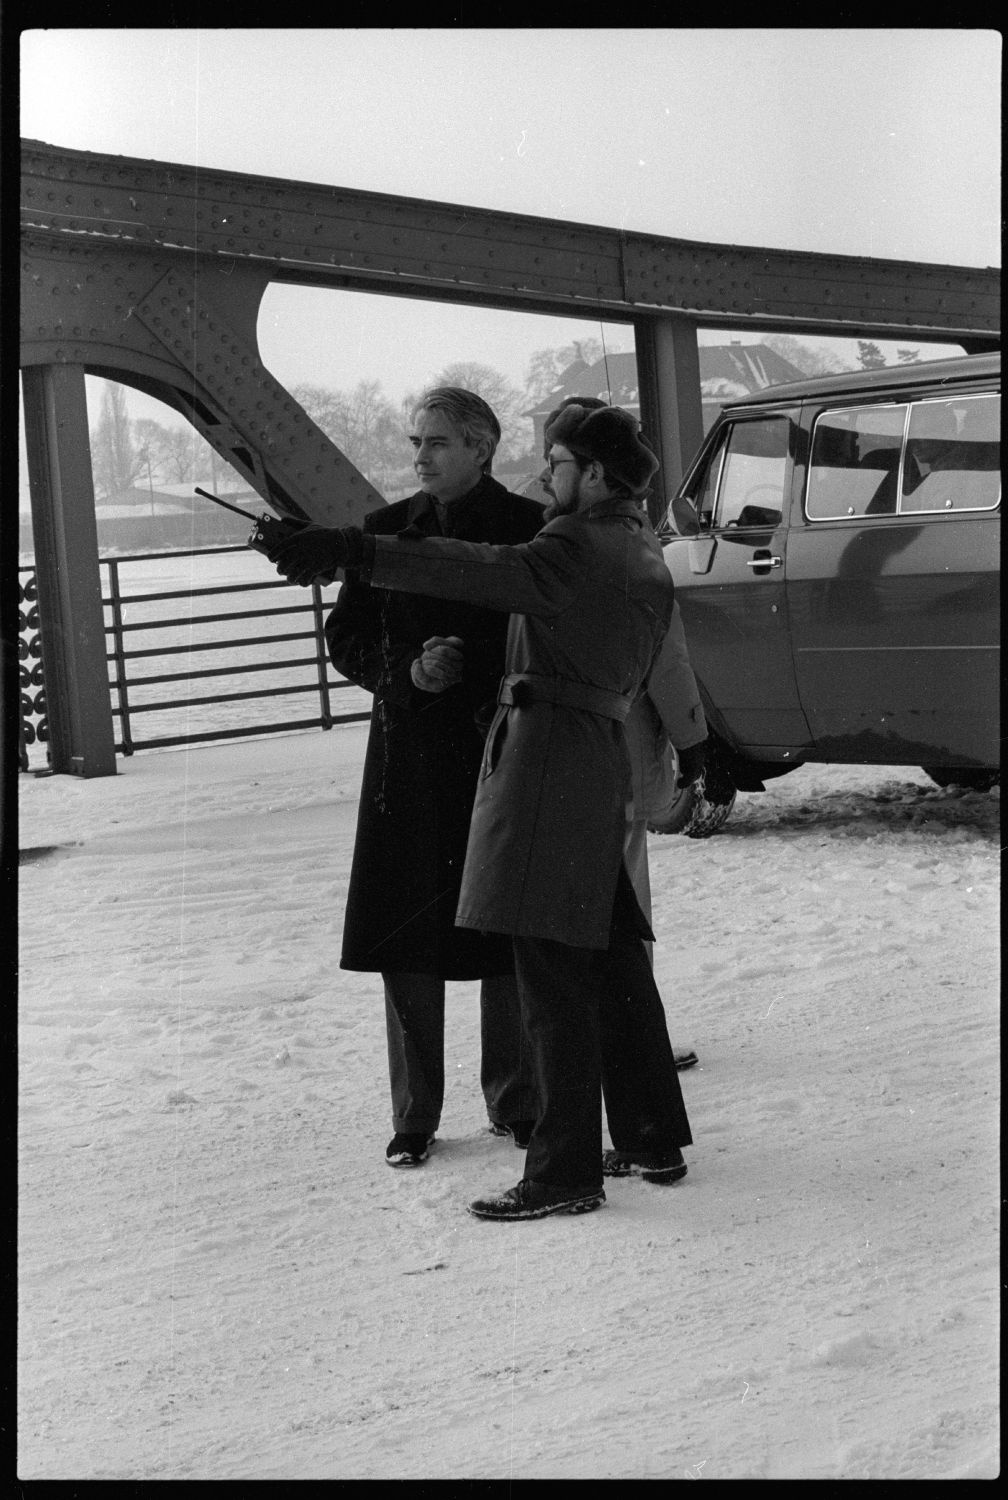 s/w-Fotografie: Agentenaustausch auf der Glienicker Brücke (AlliiertenMuseum/U.S. Army Photograph Public Domain Mark)